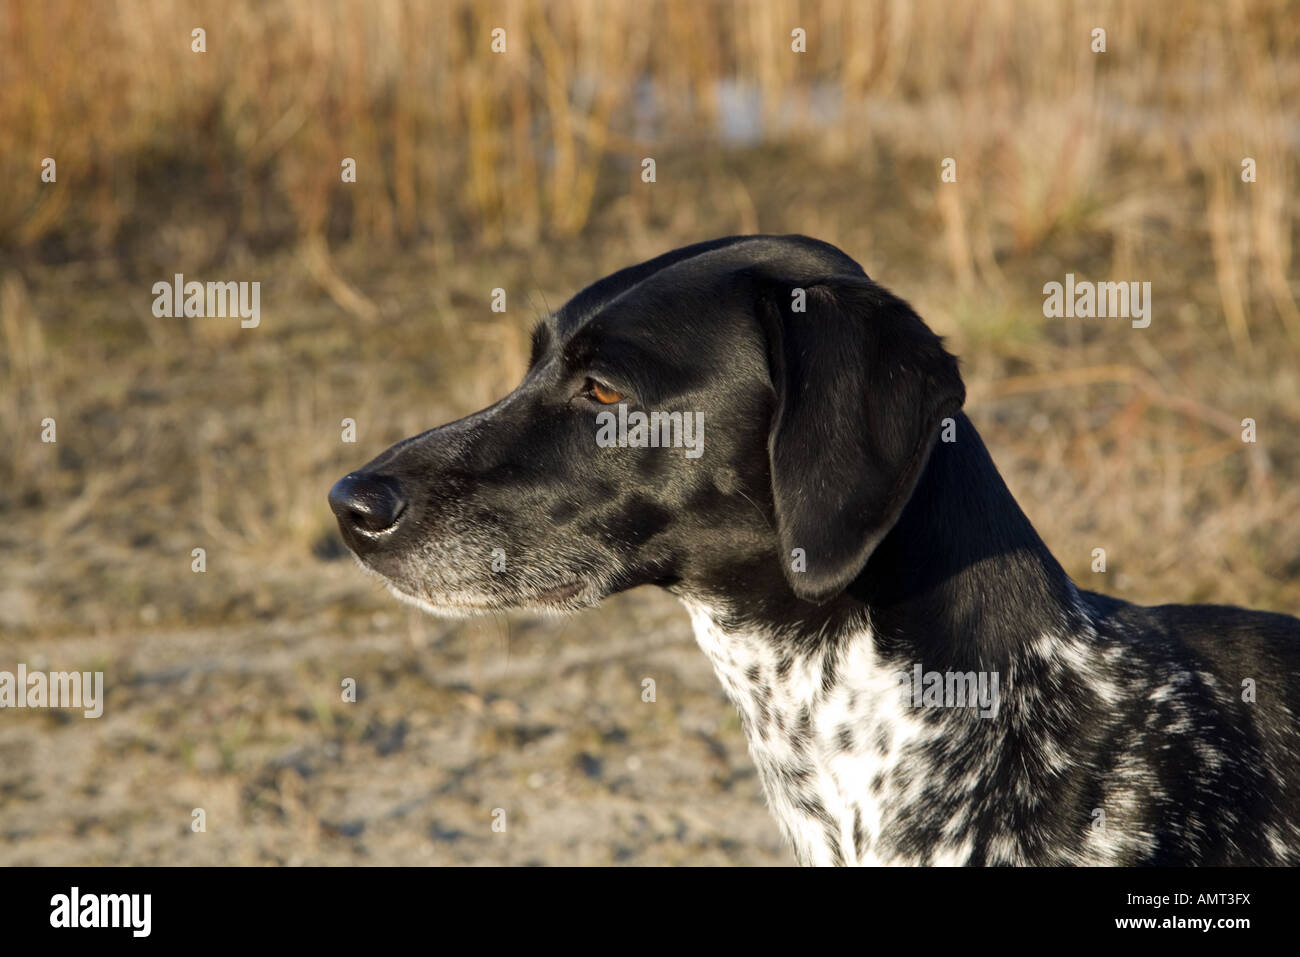 Leiter der schwarzen und grauen Hund mit farbigen Bernsteinaugen  Stockfotografie - Alamy